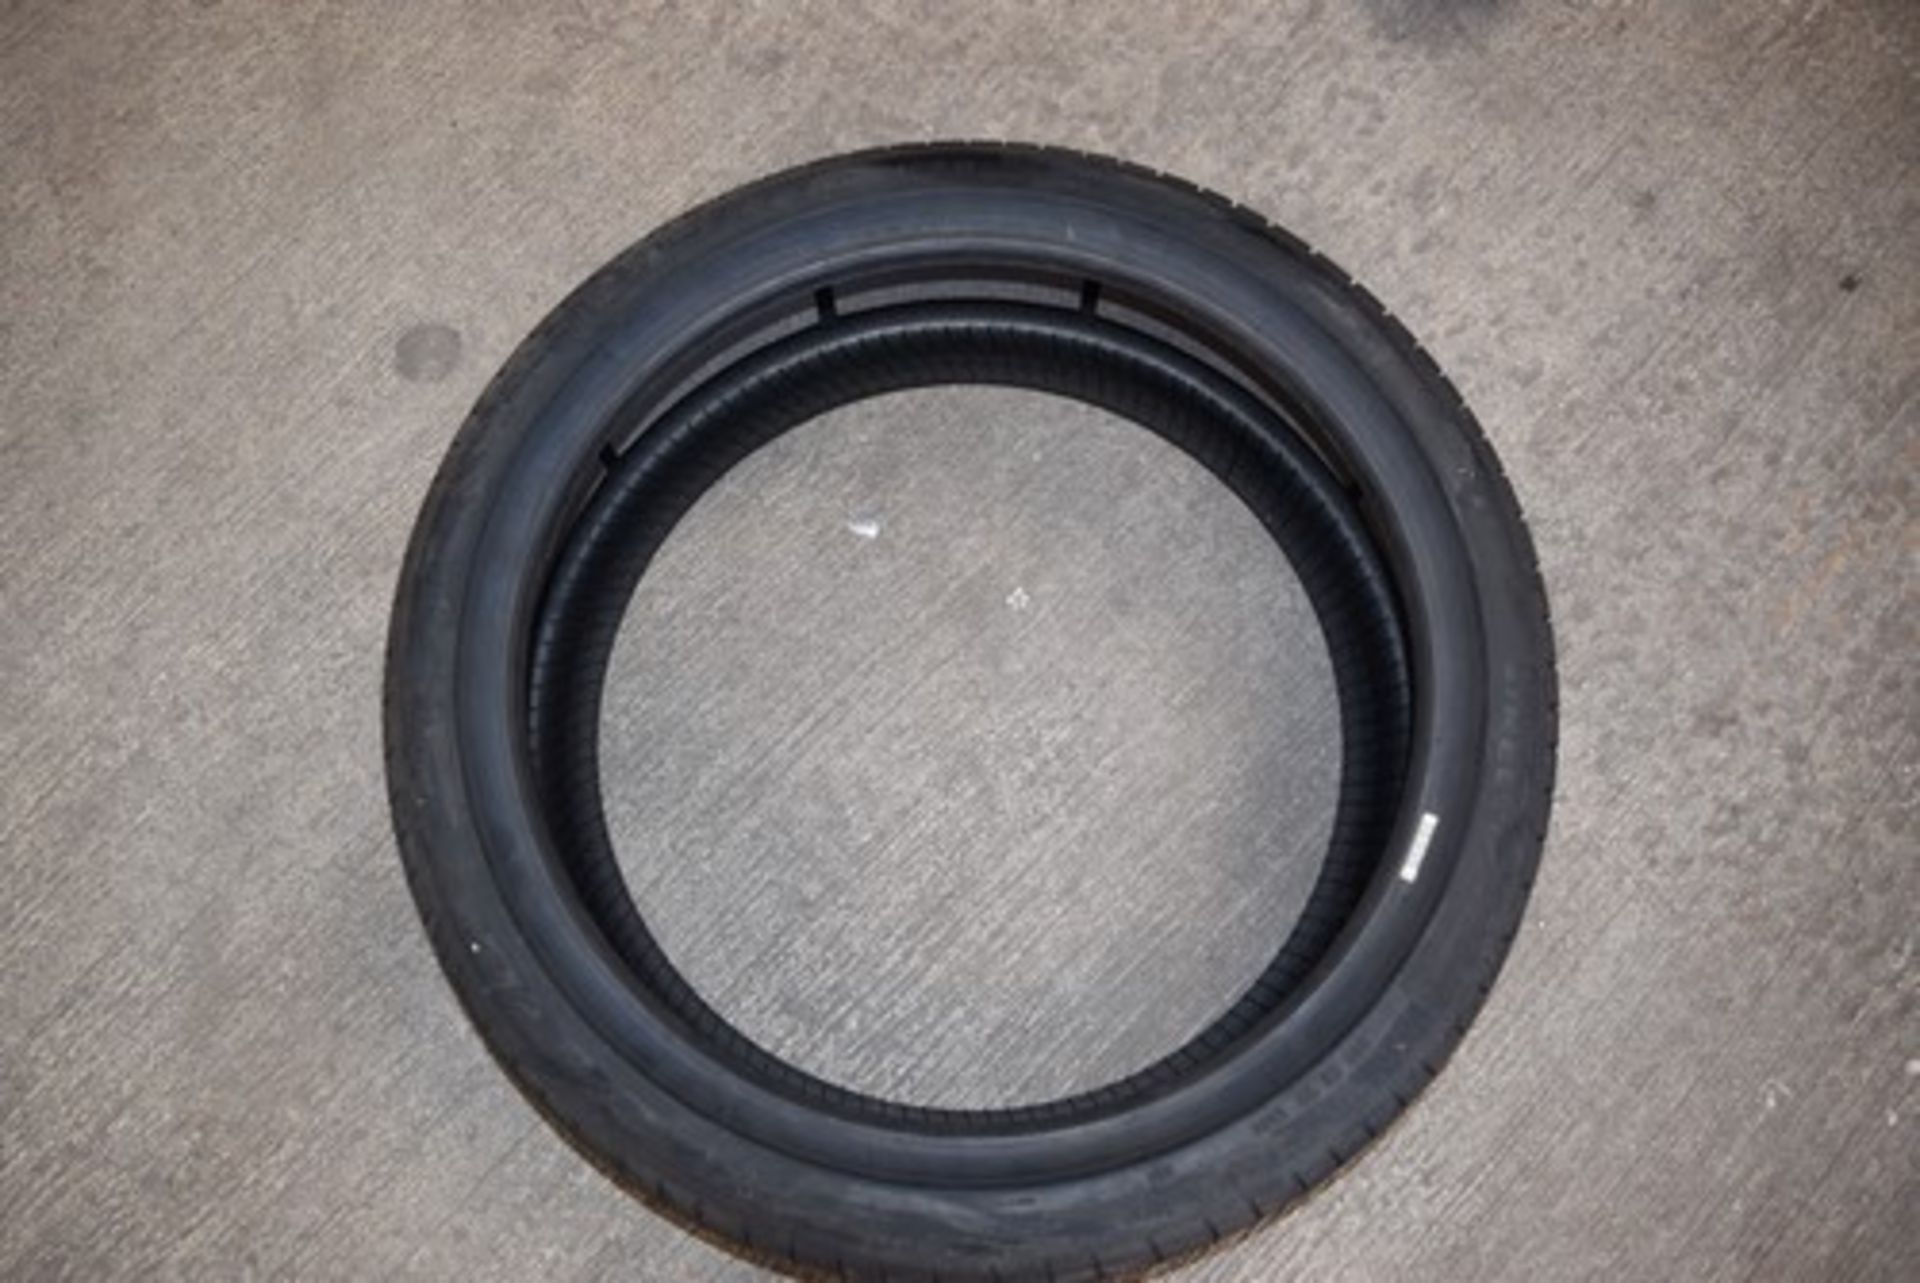 1 x Pirelli P Zero All Season tyre, size 245/40R21, 100W - New (pallet 1) - Image 2 of 2